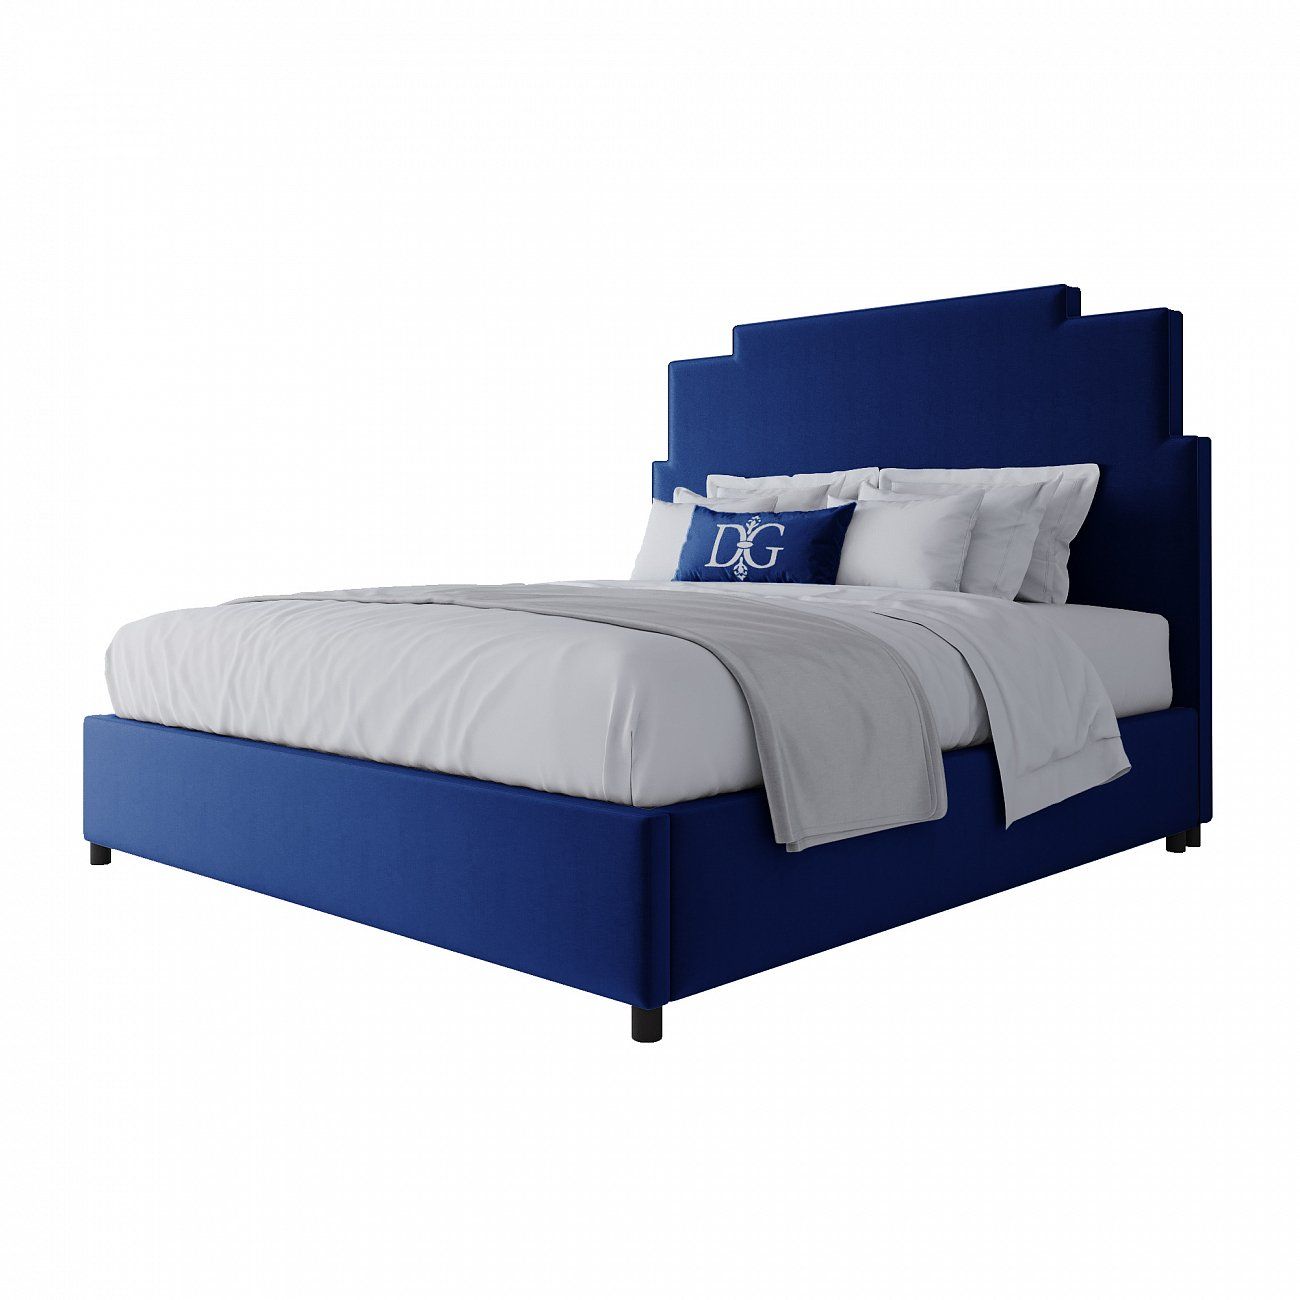 Кровать двуспальная 180x200 синяя Paxton Bed Light Blue